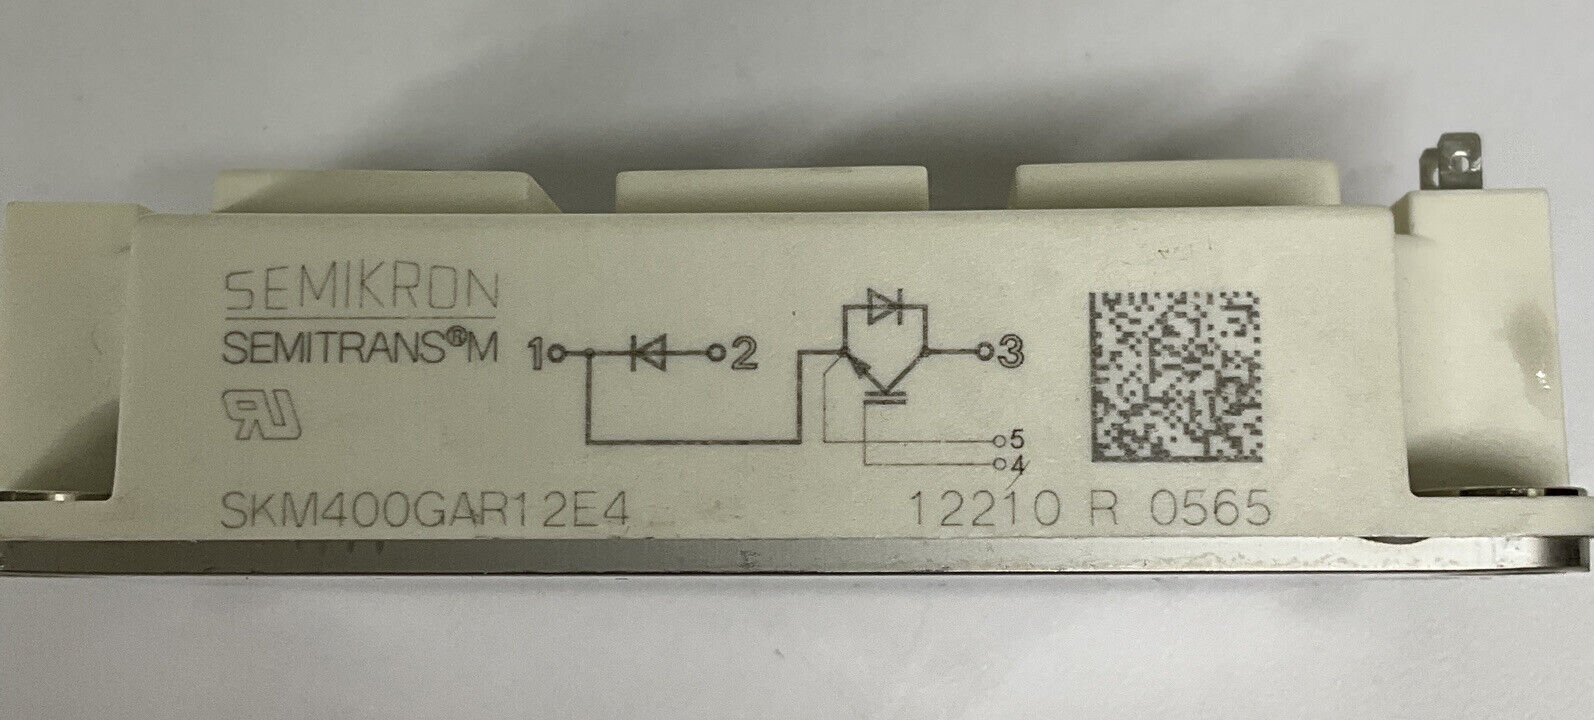 Semikron SKM400GAR12E4 New Single 616A 1.8V IGBT Module (CL349)